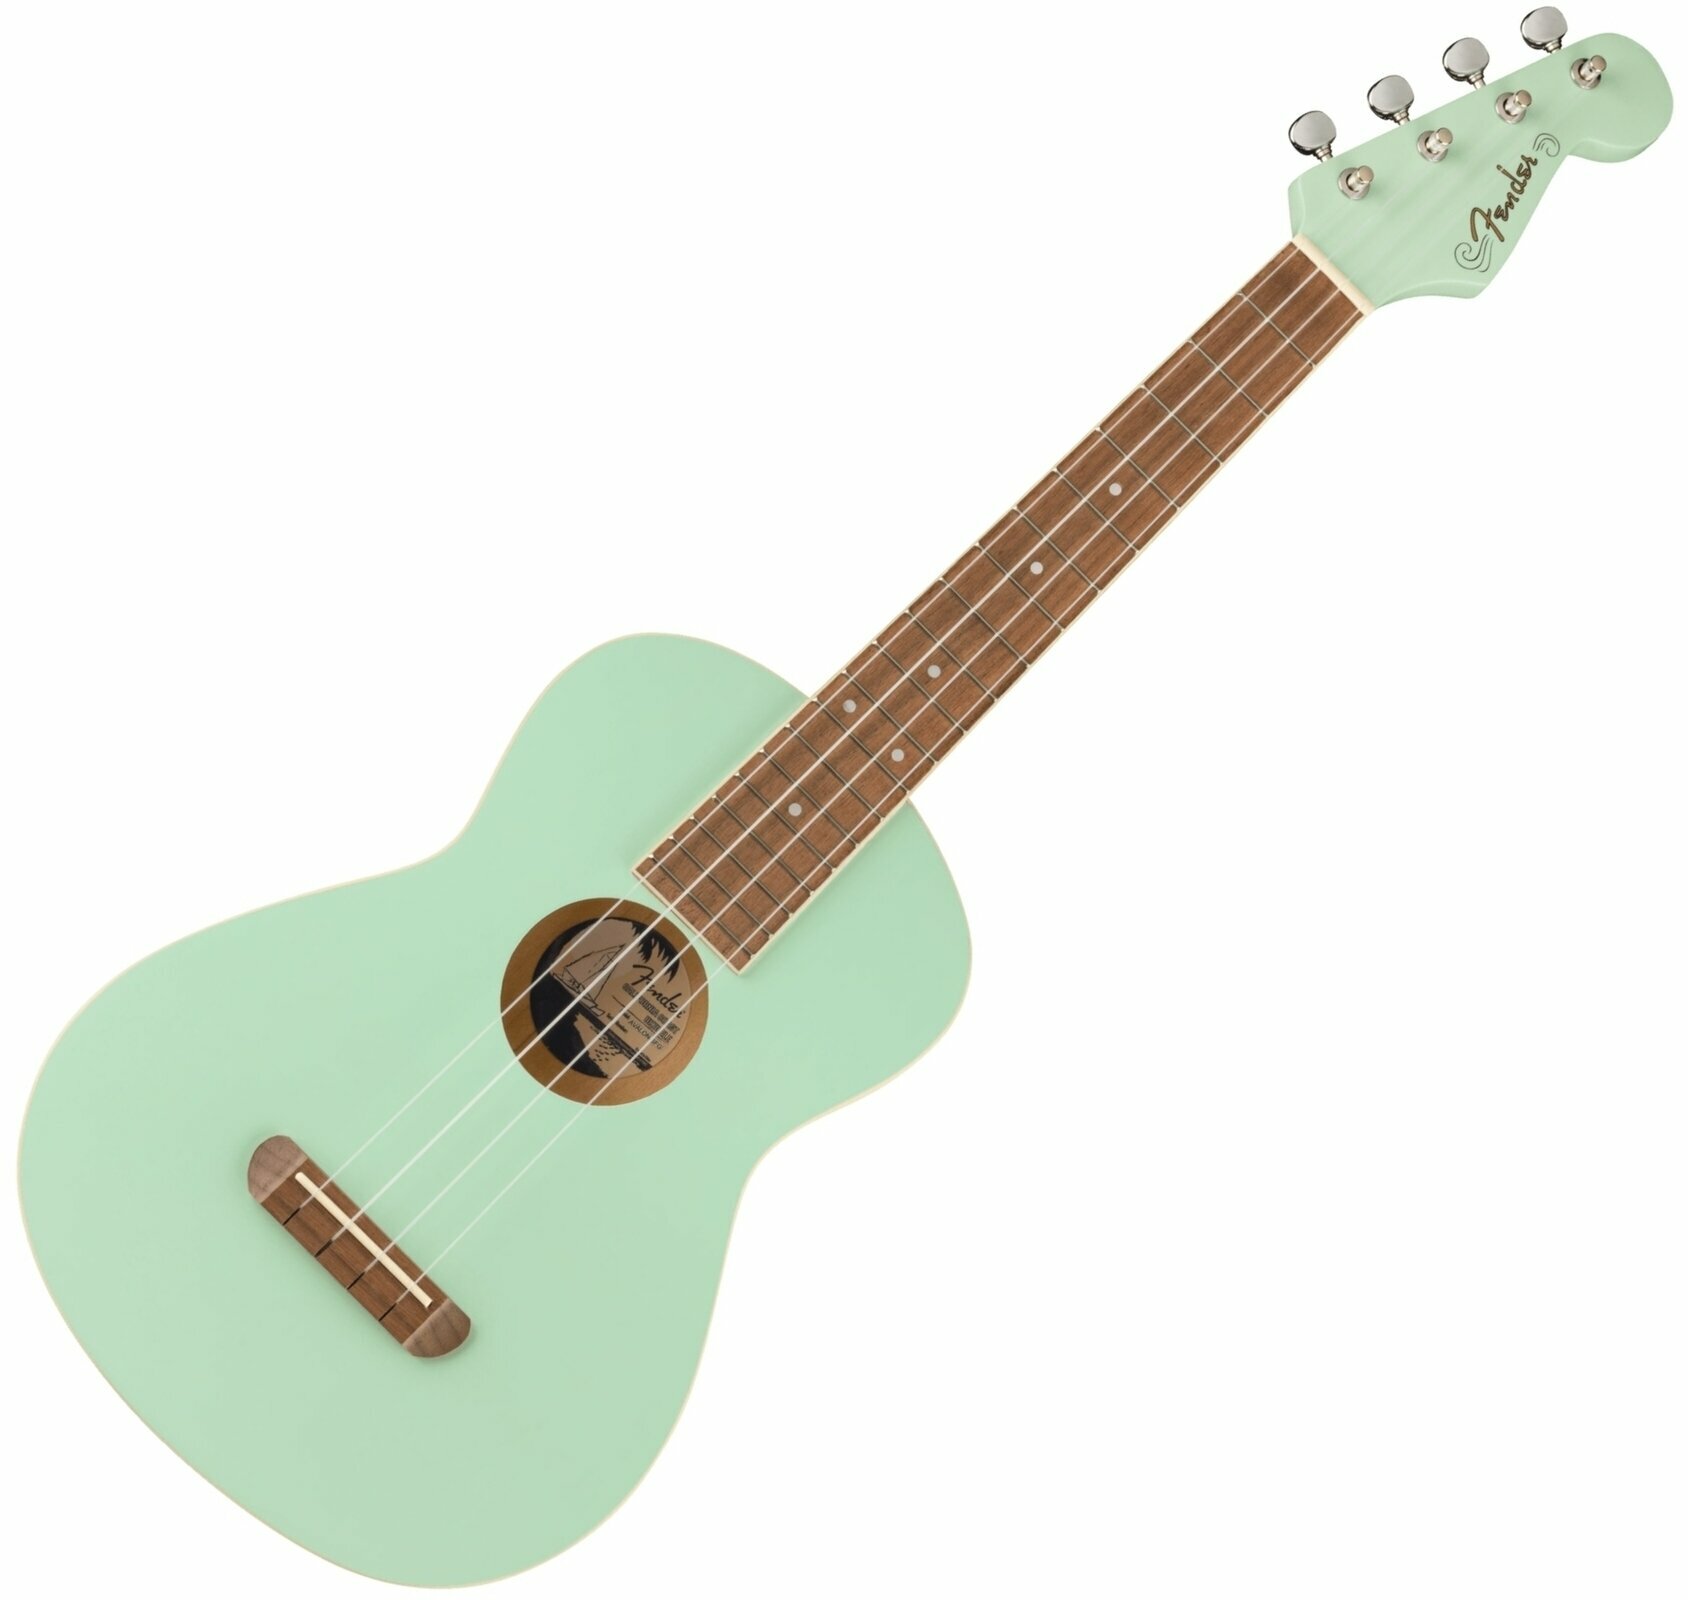 Tenor-ukuleler Fender Avalon Tenor Ukulele WN Tenor-ukuleler Surf Green